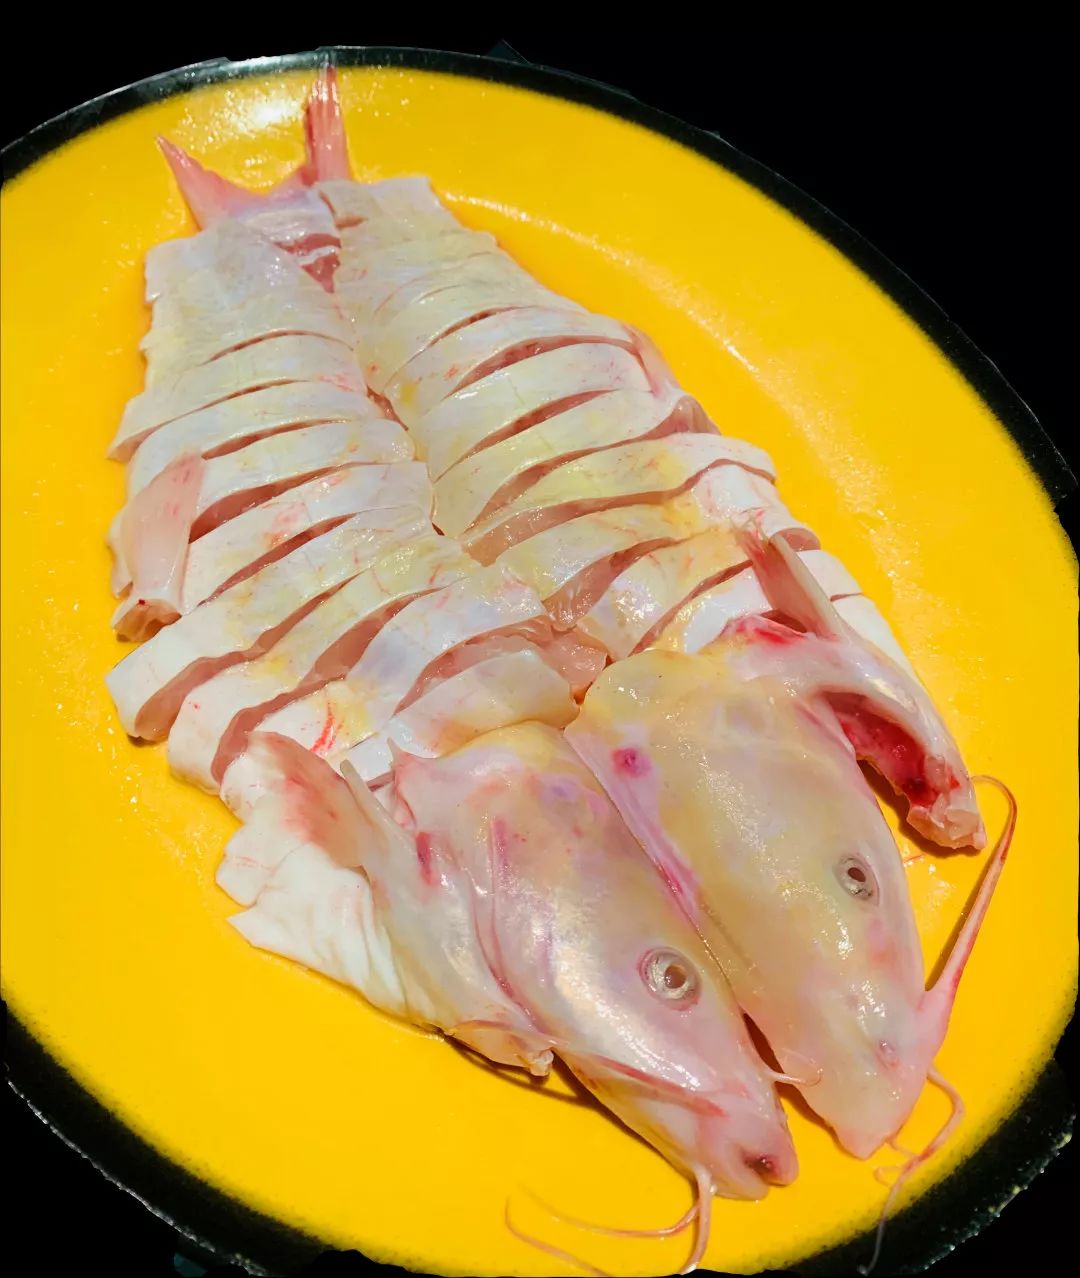 黄沙鱼生活在池塘或浅滩等静水中,是一种不太常见的鱼类,其肉质醇厚鲜